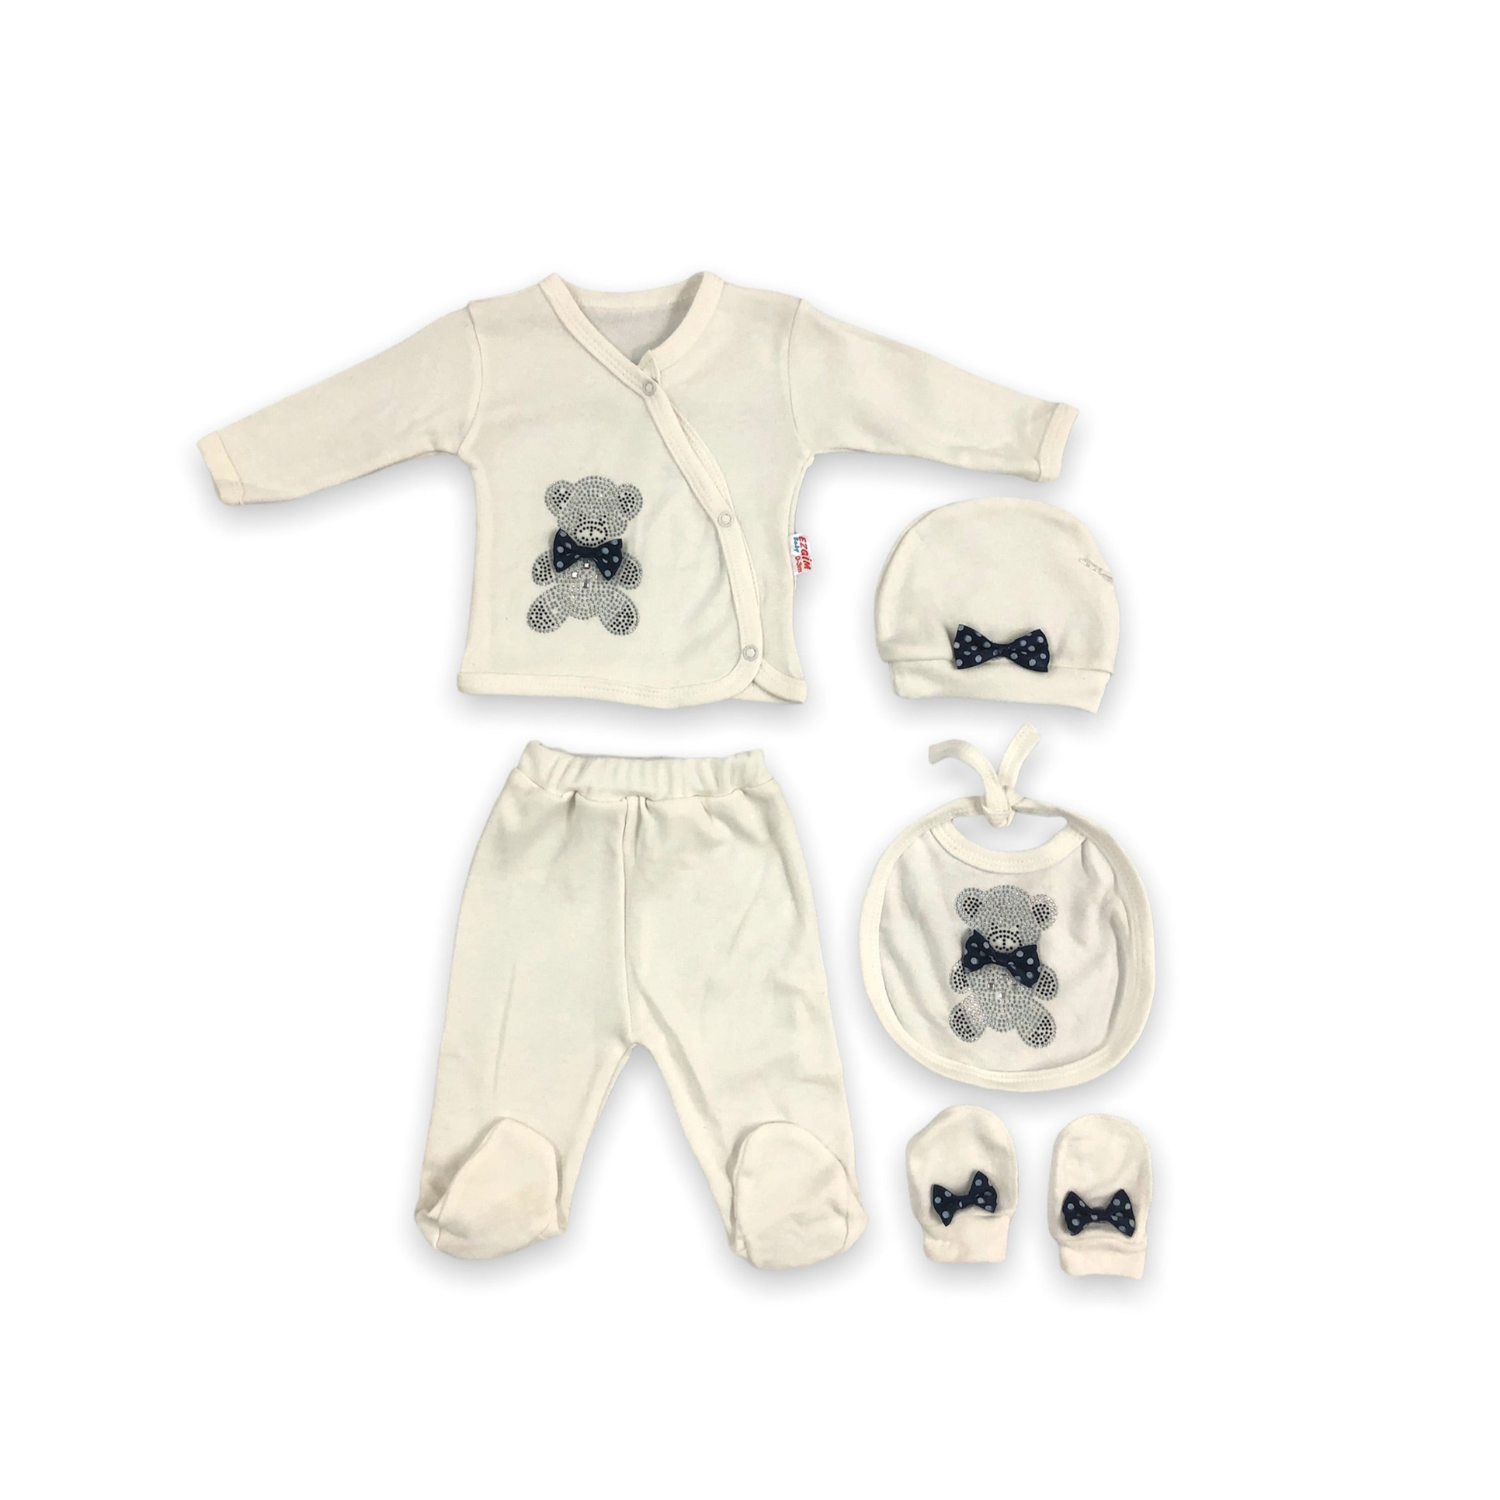 The Blue Bear Baby Pajama Set